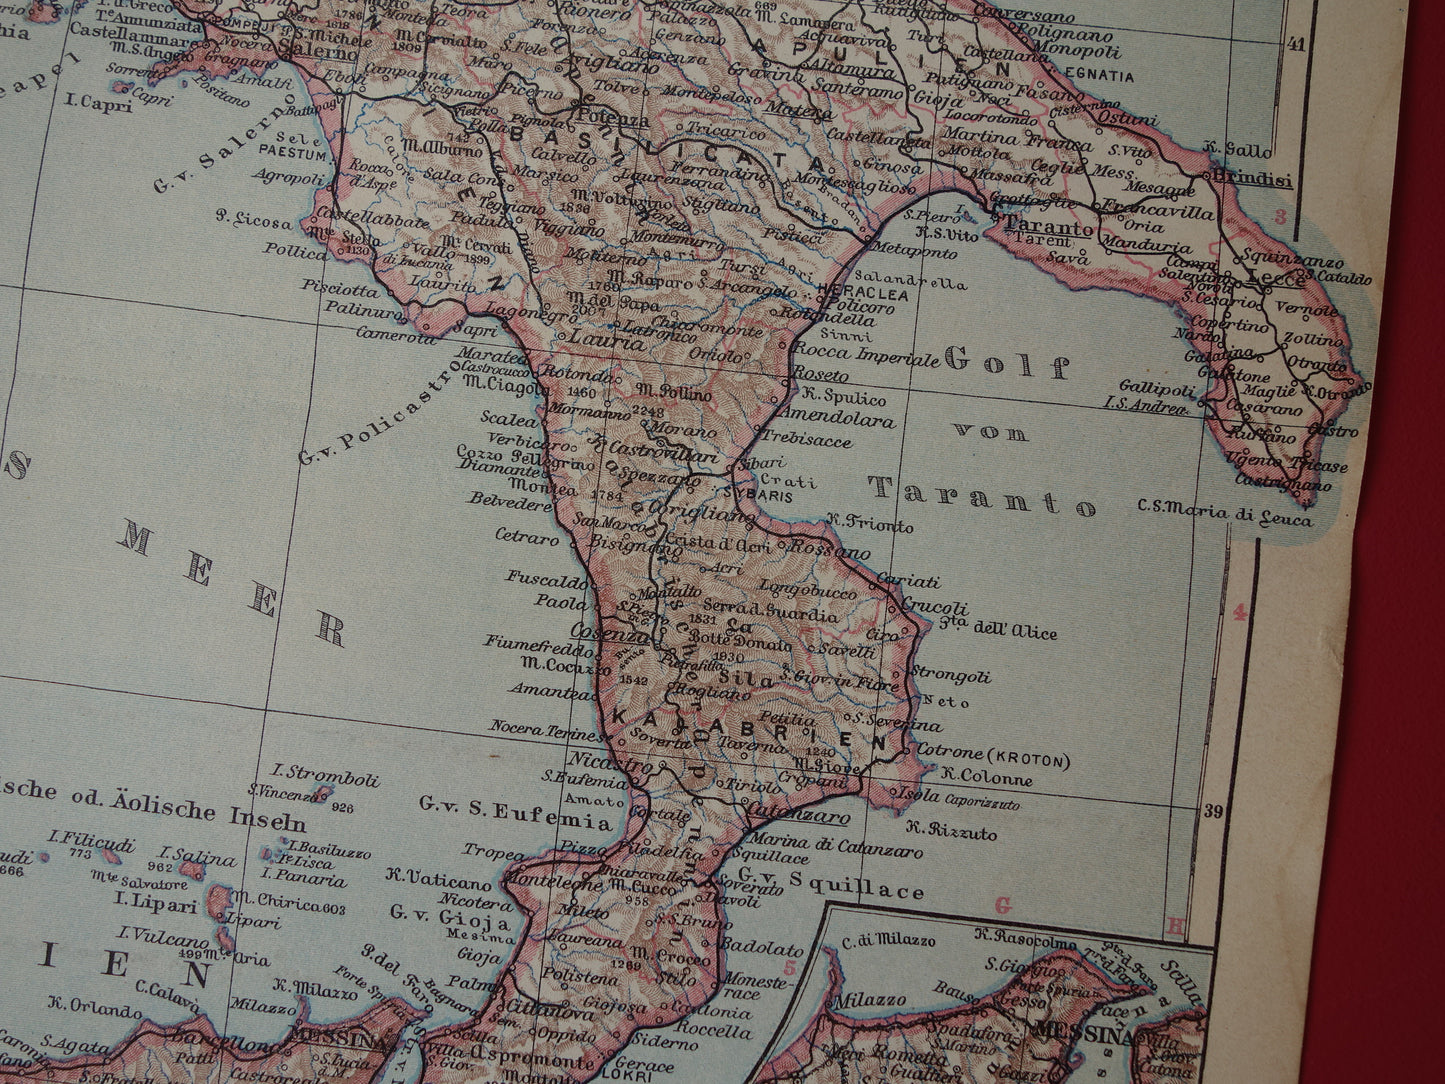 ITALIE oude gedetailleerde kaart van Zuid-Italië uit 1928 originele vintage landkaart Sicilië Napels Palermo Messina